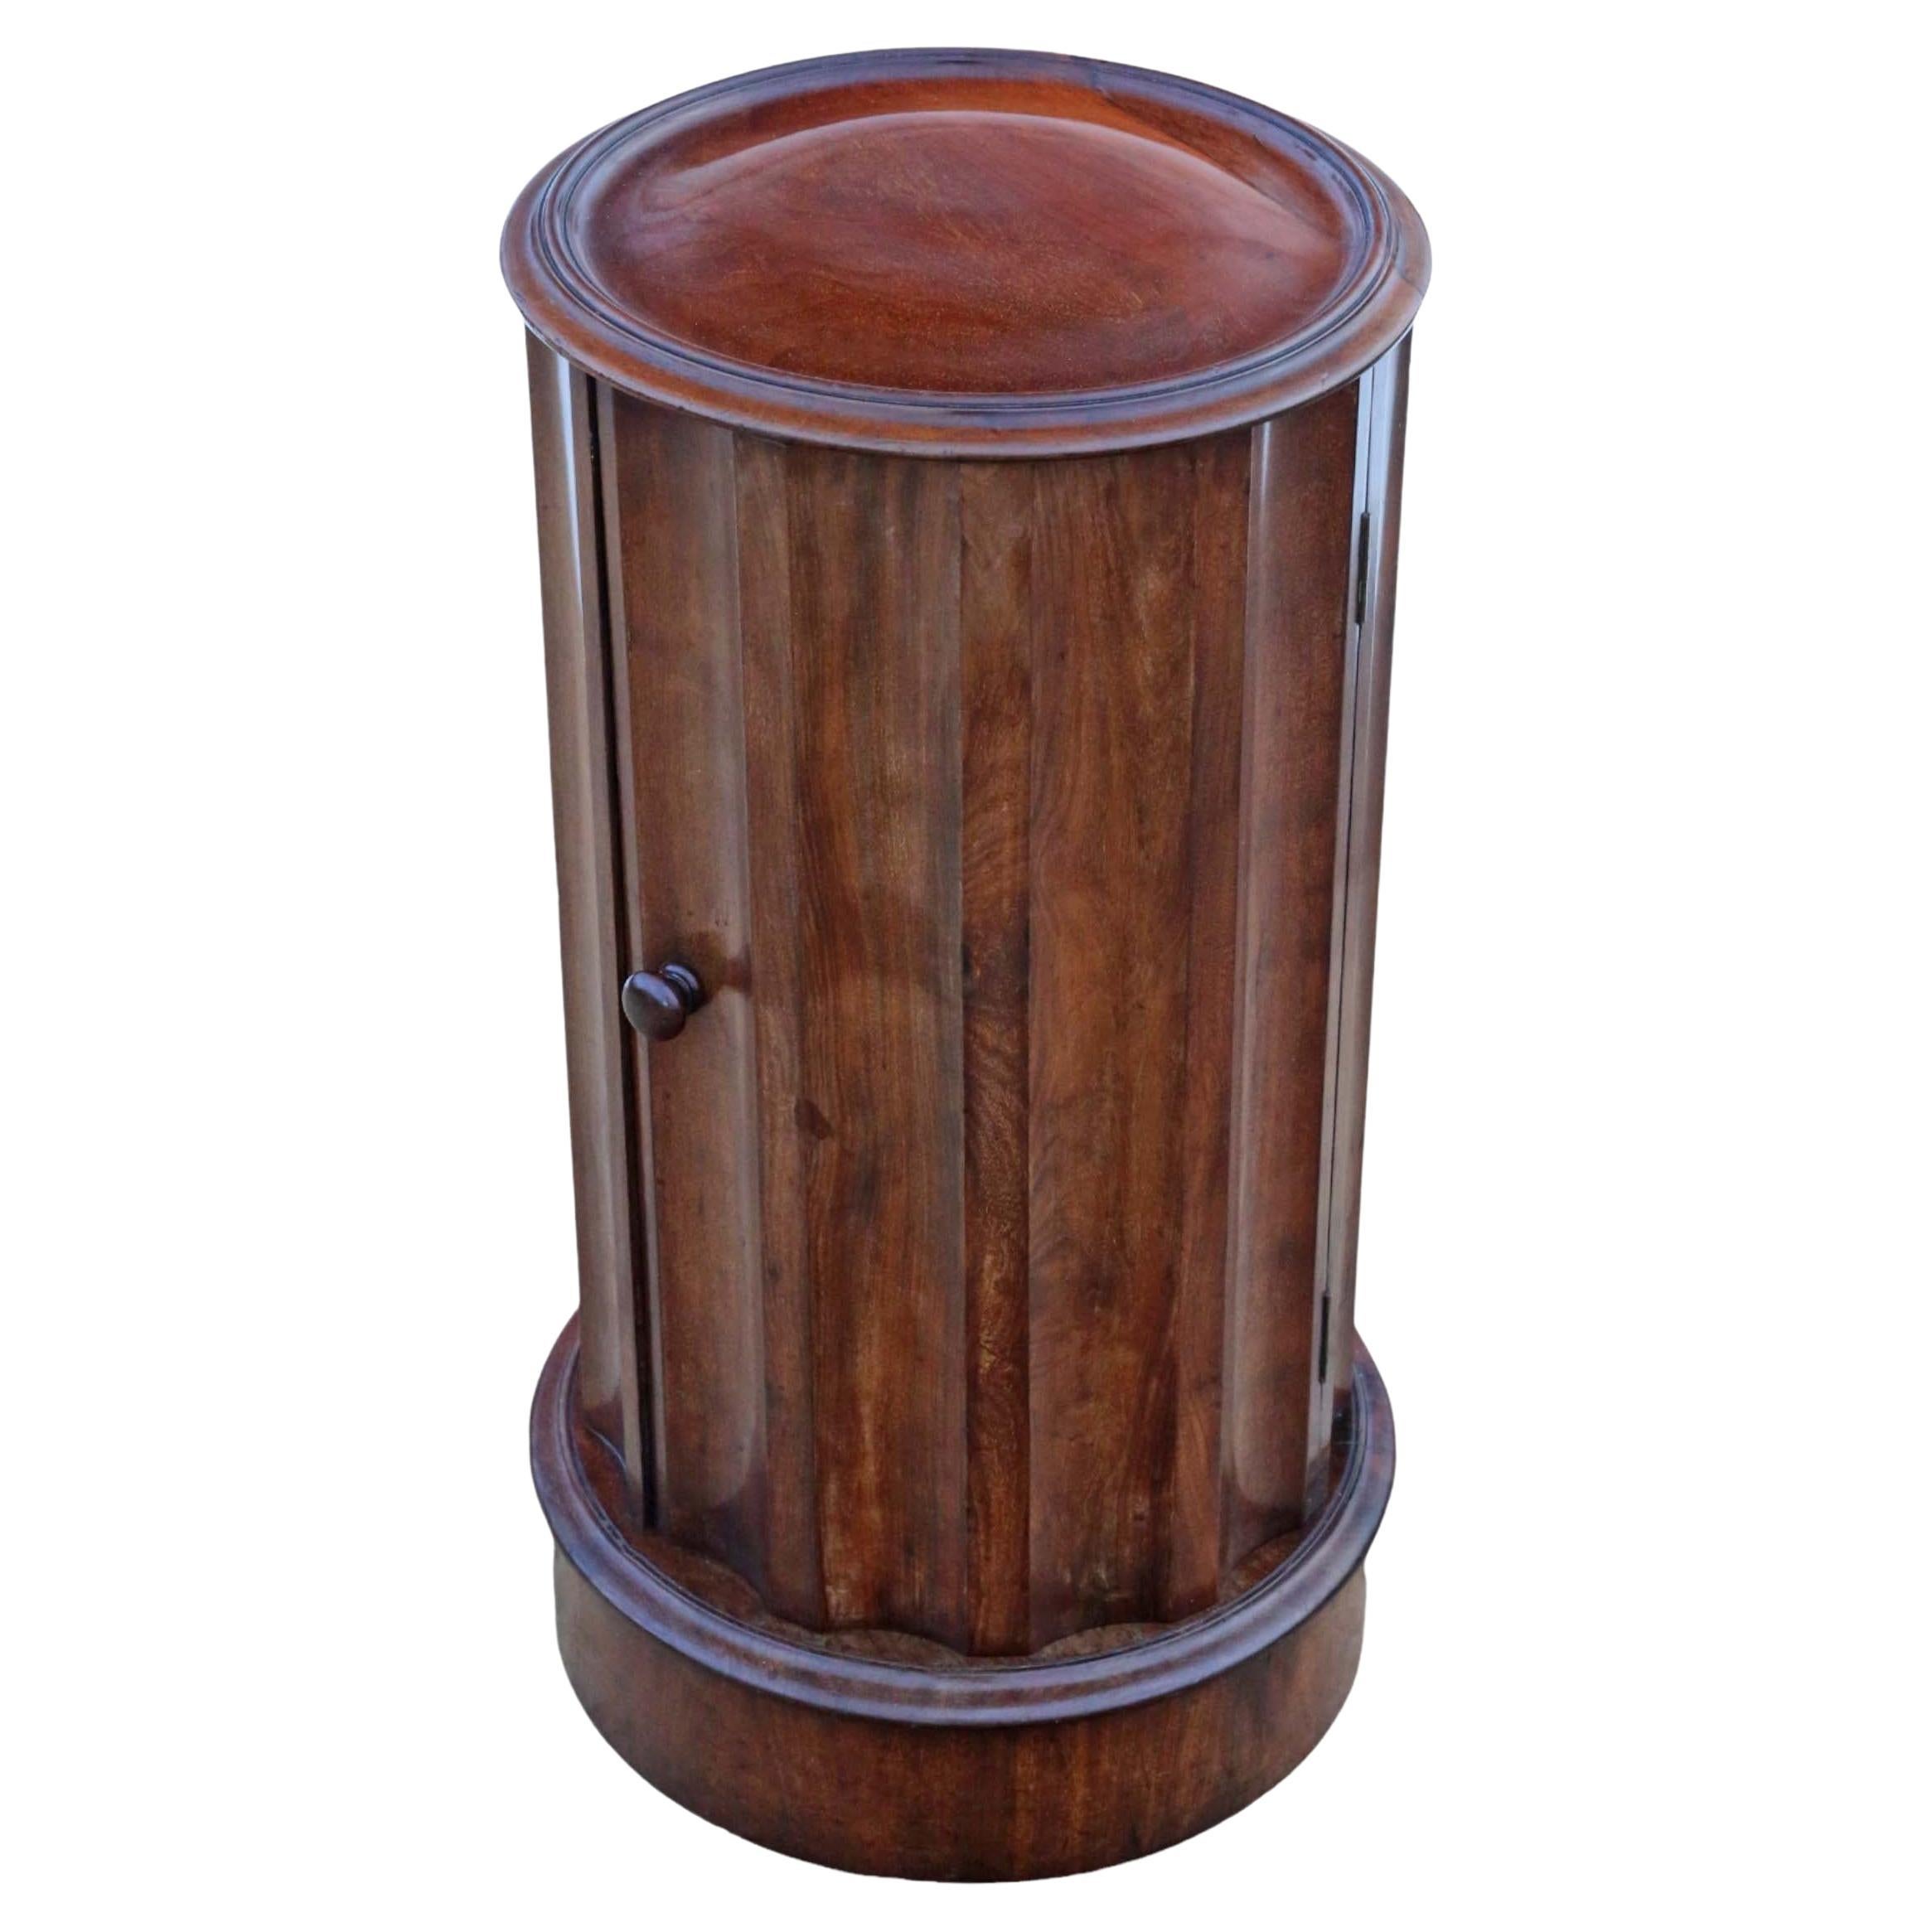 Antique qualité Victorienne acajou cannelé cylindrique table de chevet cupboard cabine